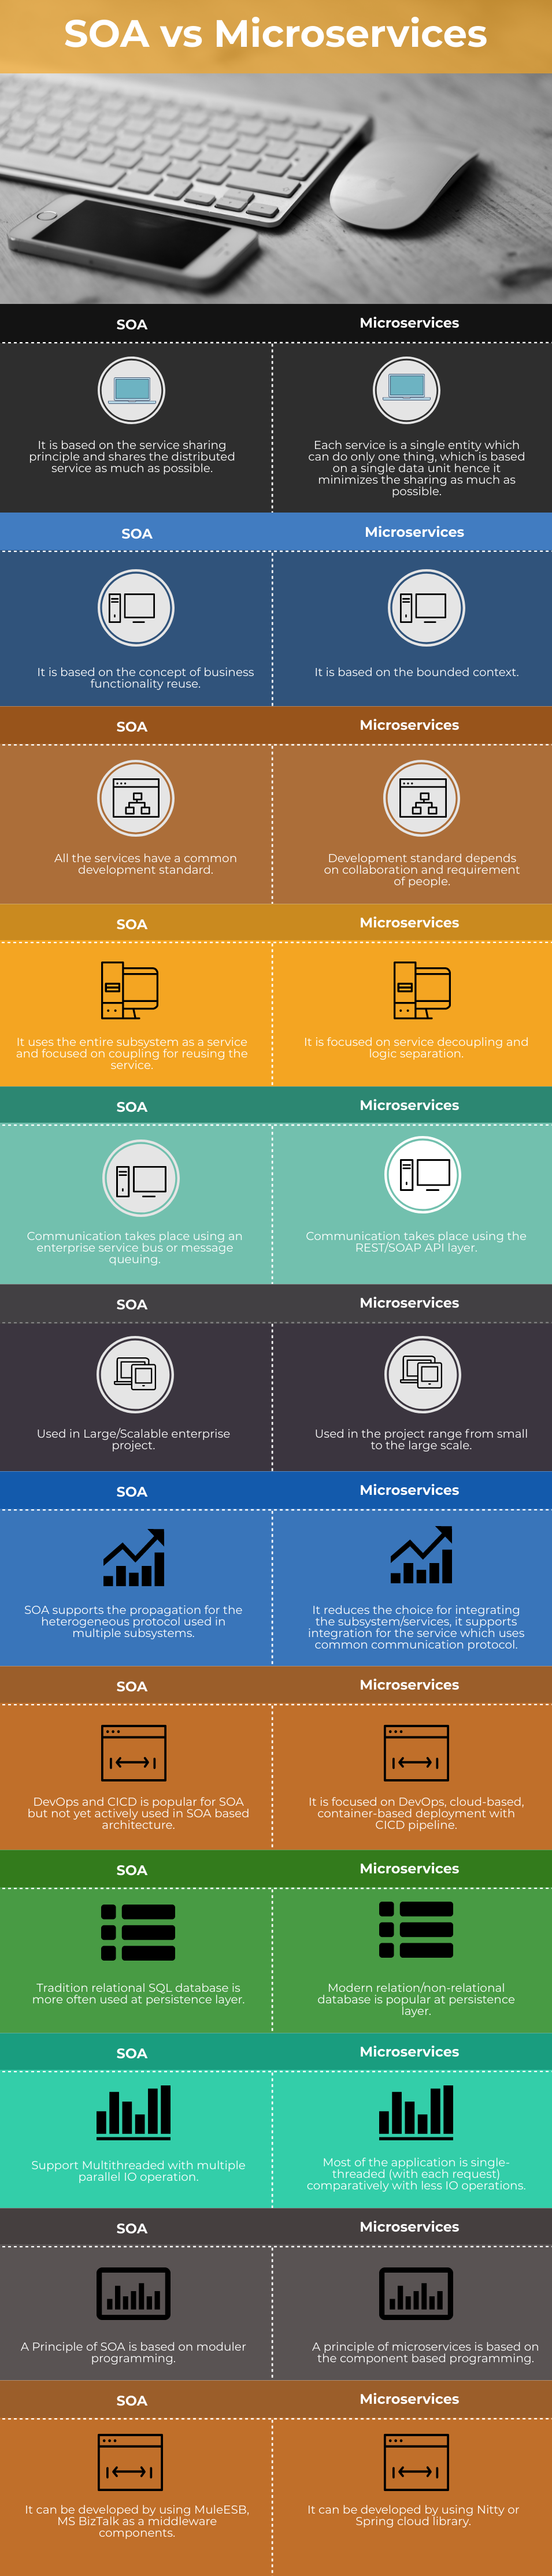 SOA vs Microservices Info